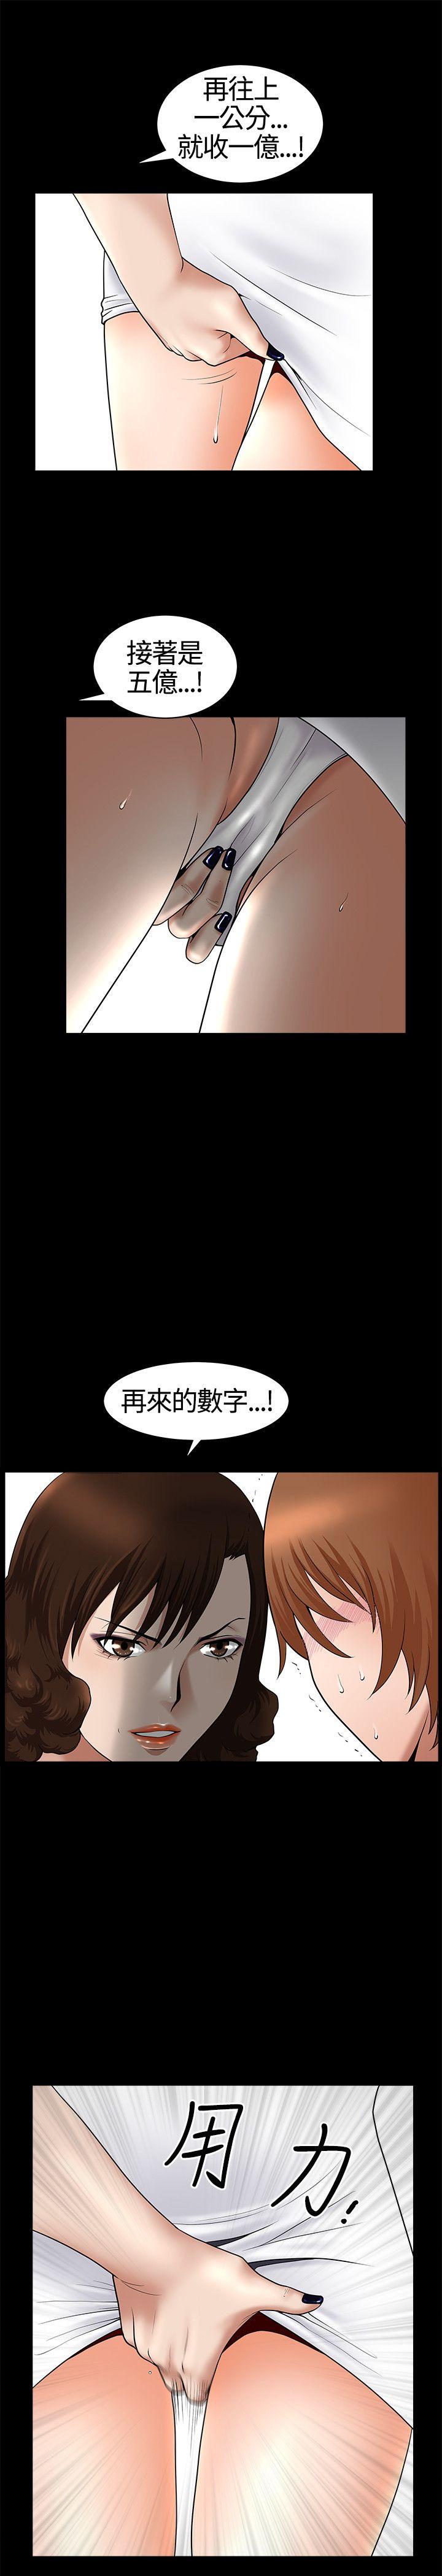 韩国污漫画 人妻性解放3:粗糙的手 第18话 1